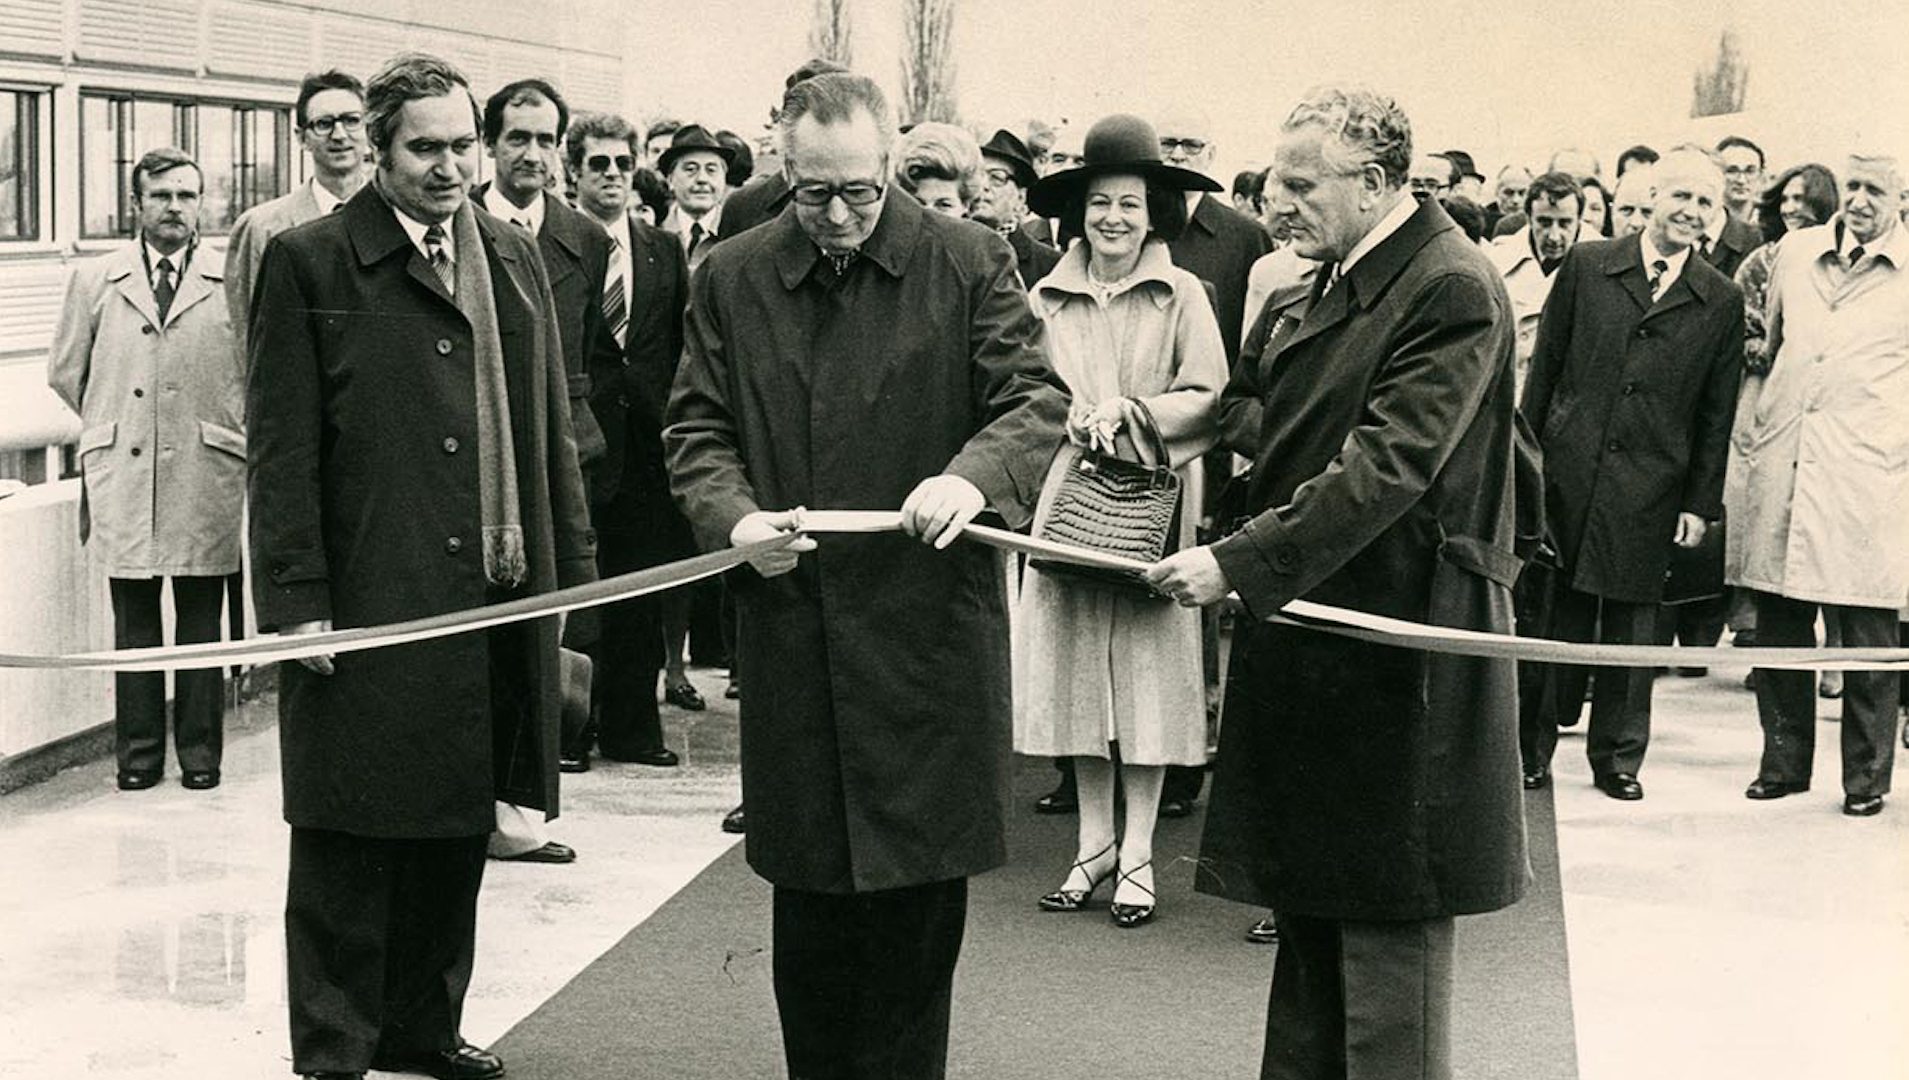 Un homme au centre de l’image coupe un ruban d’inauguration. Il est entouré de deux autres hommes se tenant sur le côté et d’une foule de personnes se tenant derrière lui.